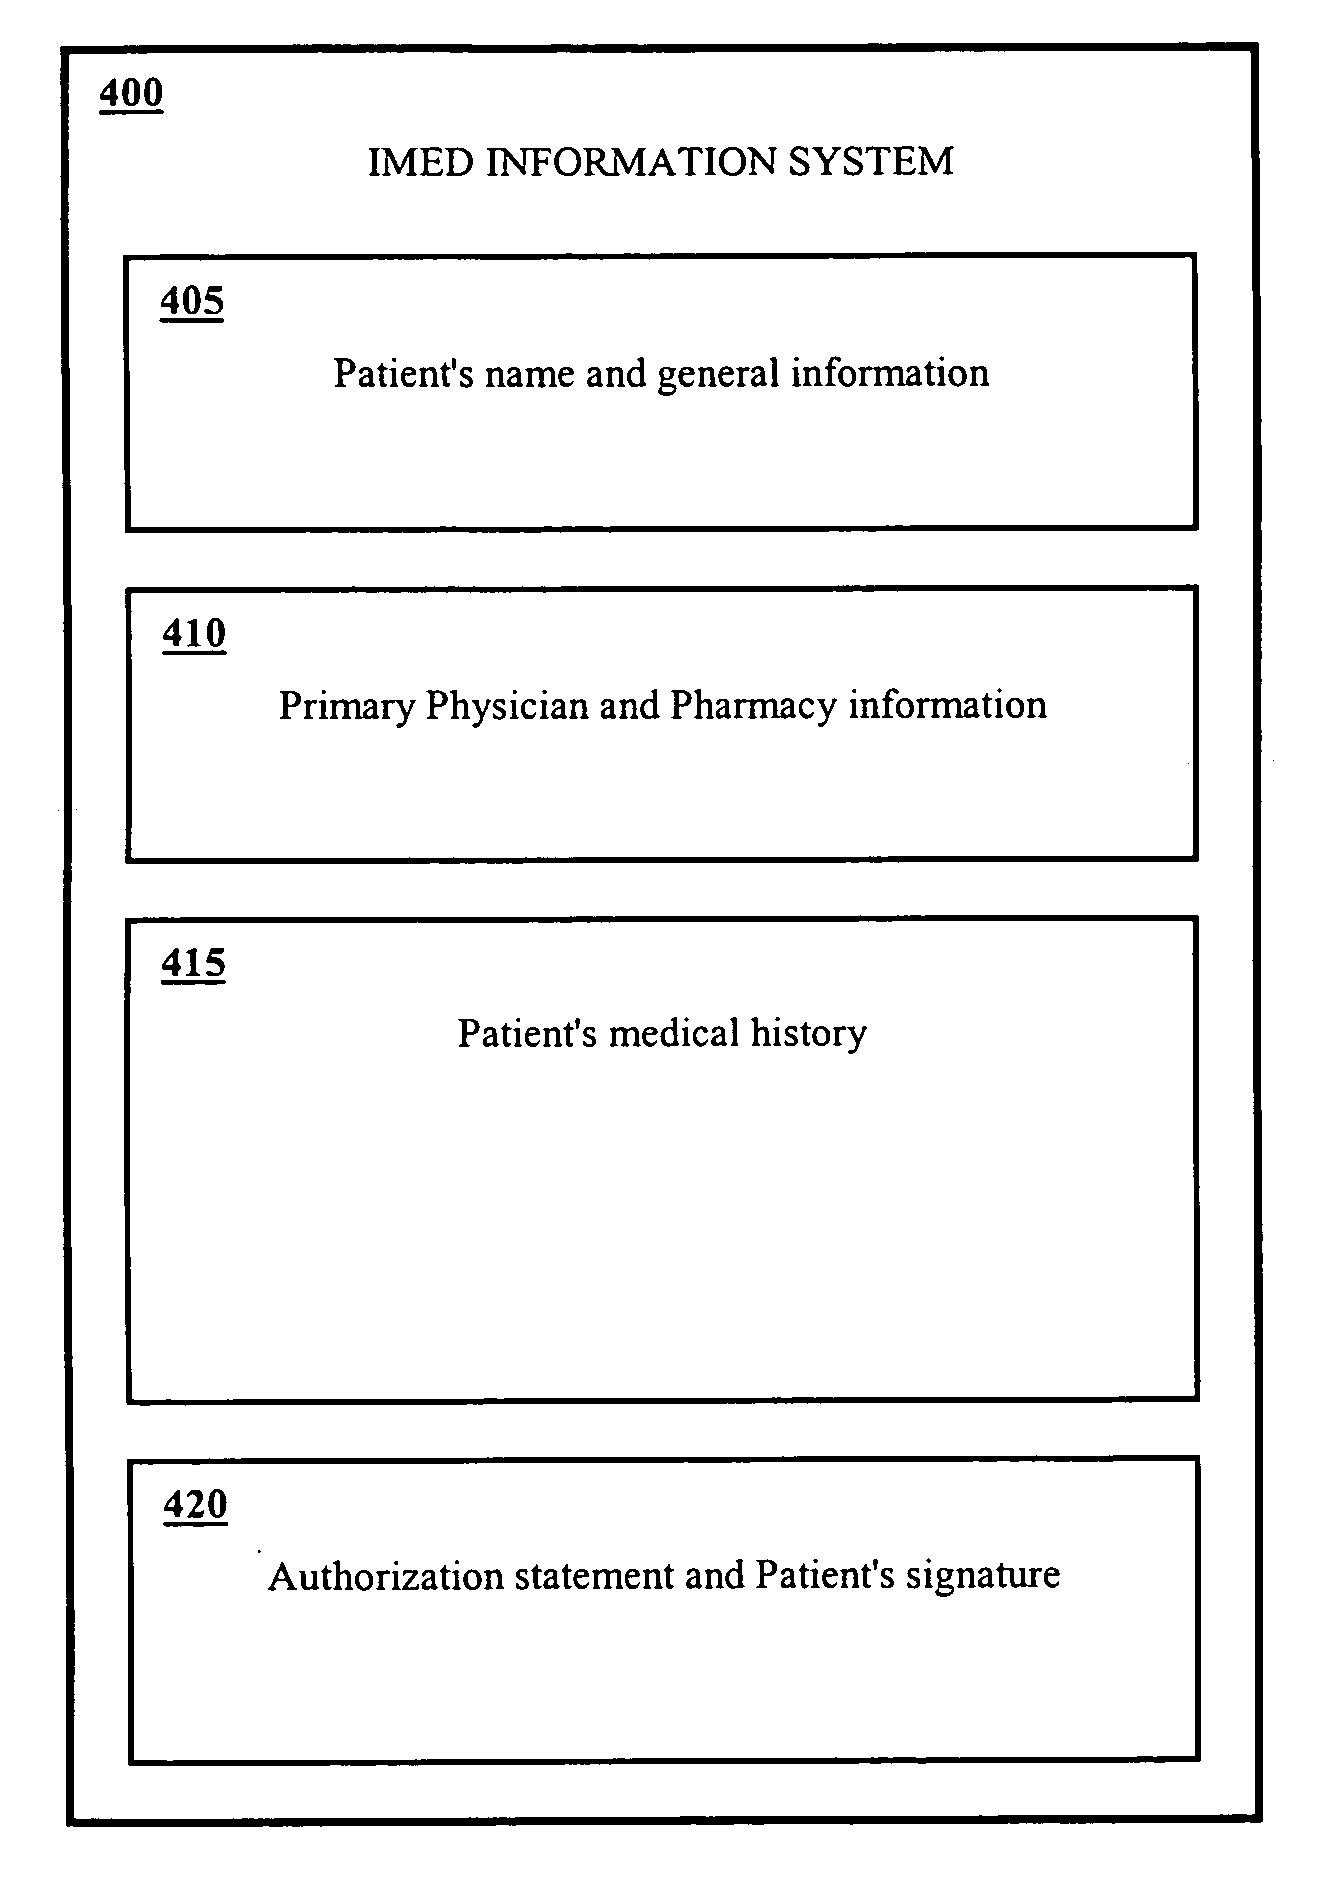 Internet medical information system (IMED)